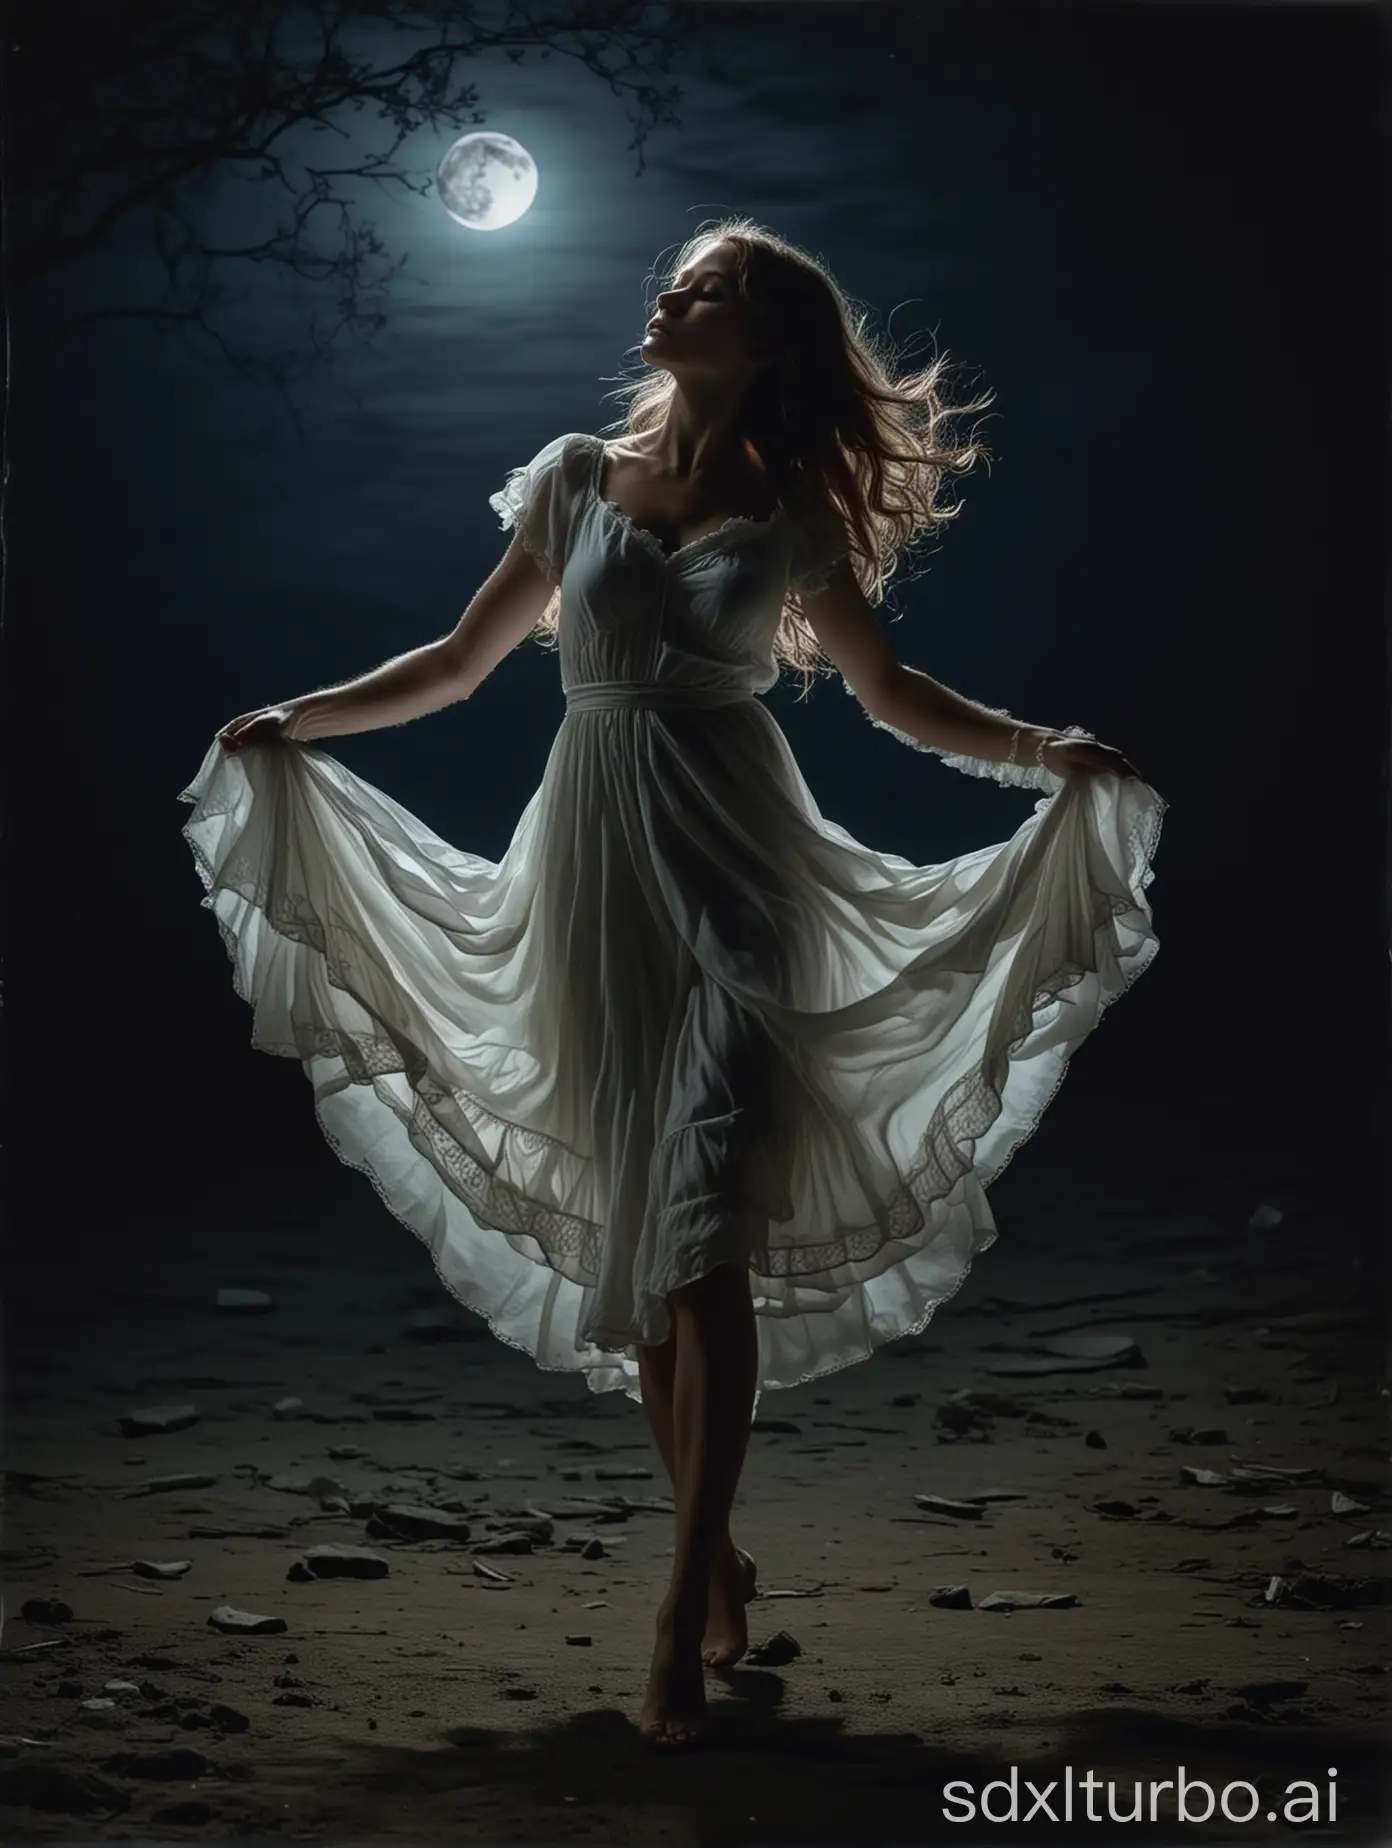 Enigmatic-Dancing-Girl-in-Moonlit-Night